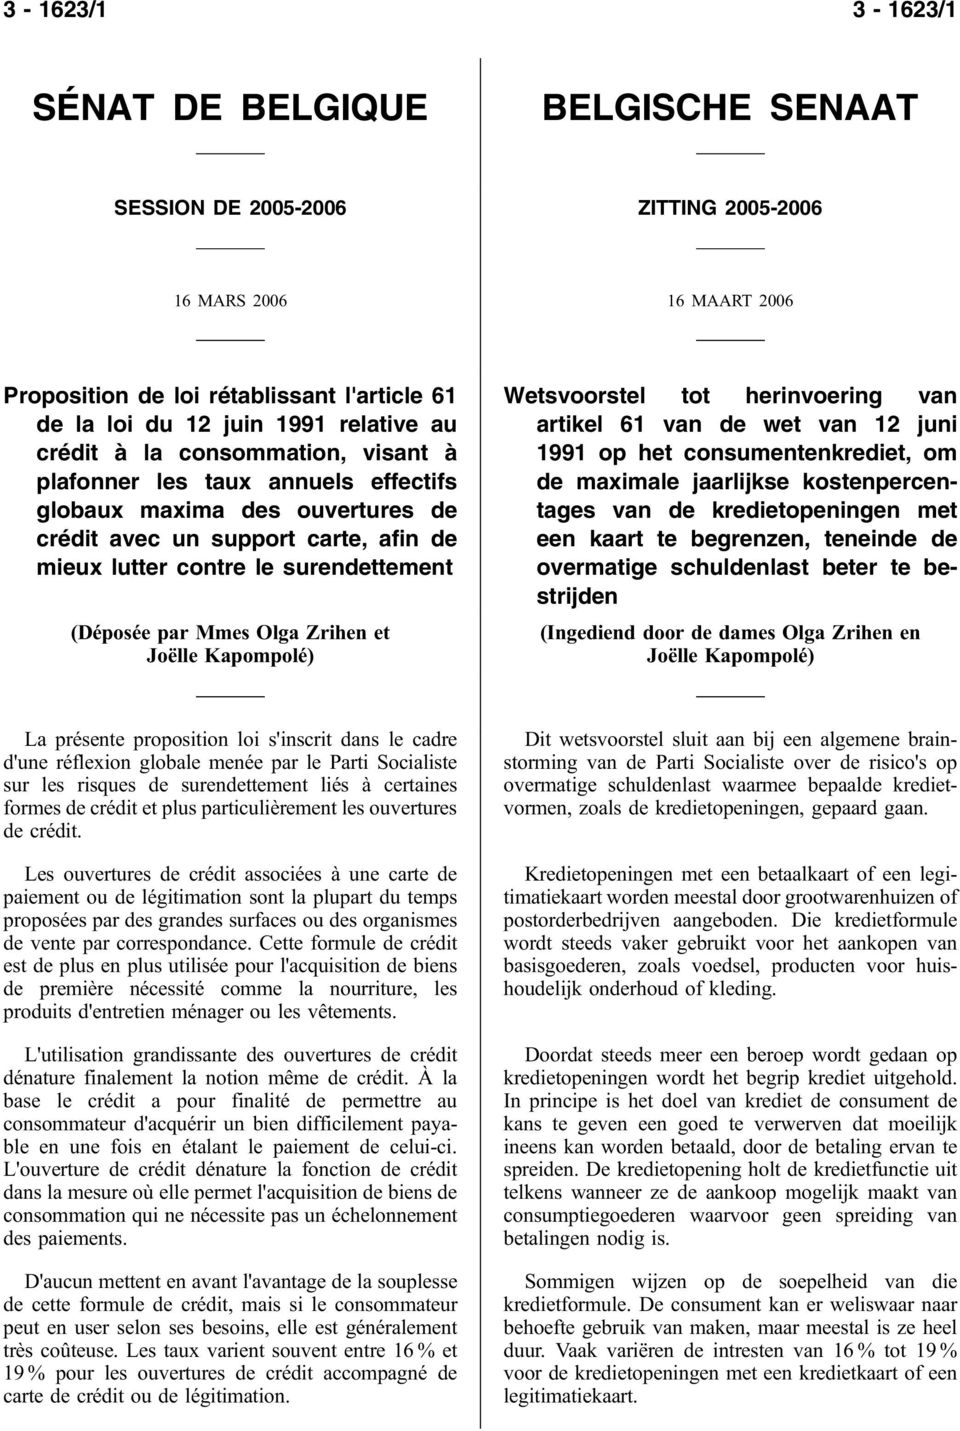 Mmes Olga Zrihen et Joëlle Kapompolé) Wetsvoorstel tot herinvoering van artikel 61 van de wet van 12 juni 1991 op het consumentenkrediet, om de maximale jaarlijkse kostenpercentages van de